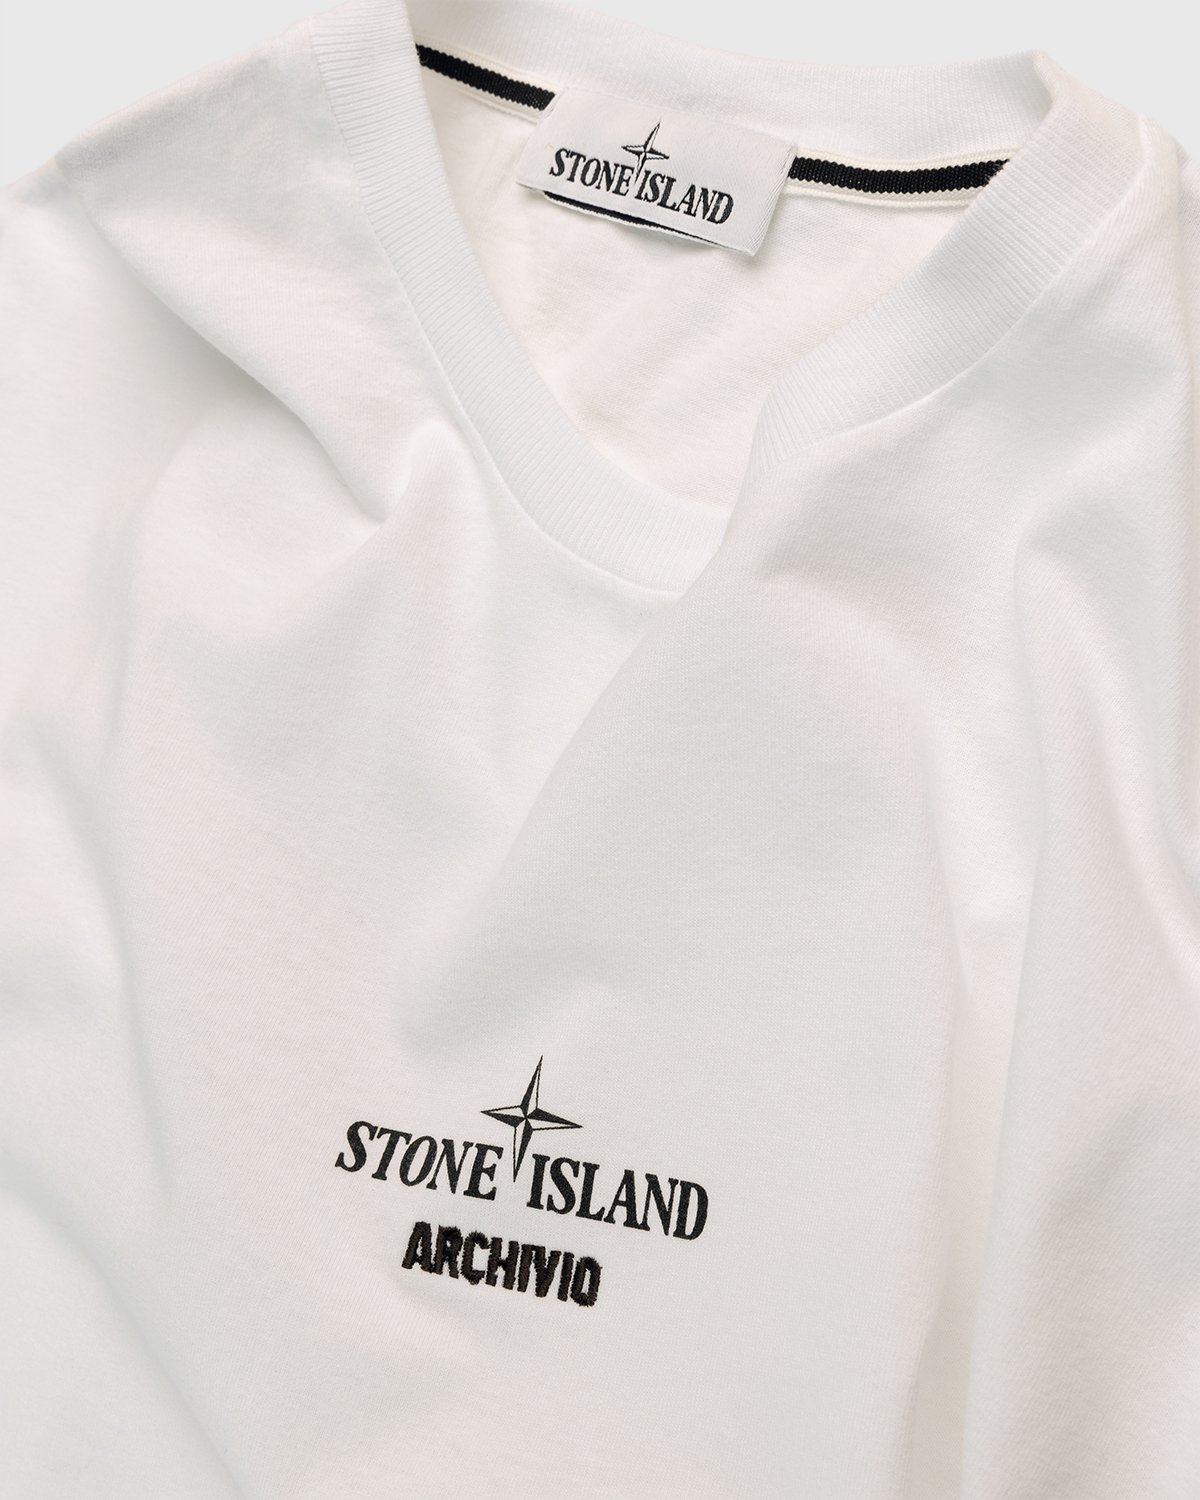 Stone Island - T-Shirt White - Clothing - White - Image 3